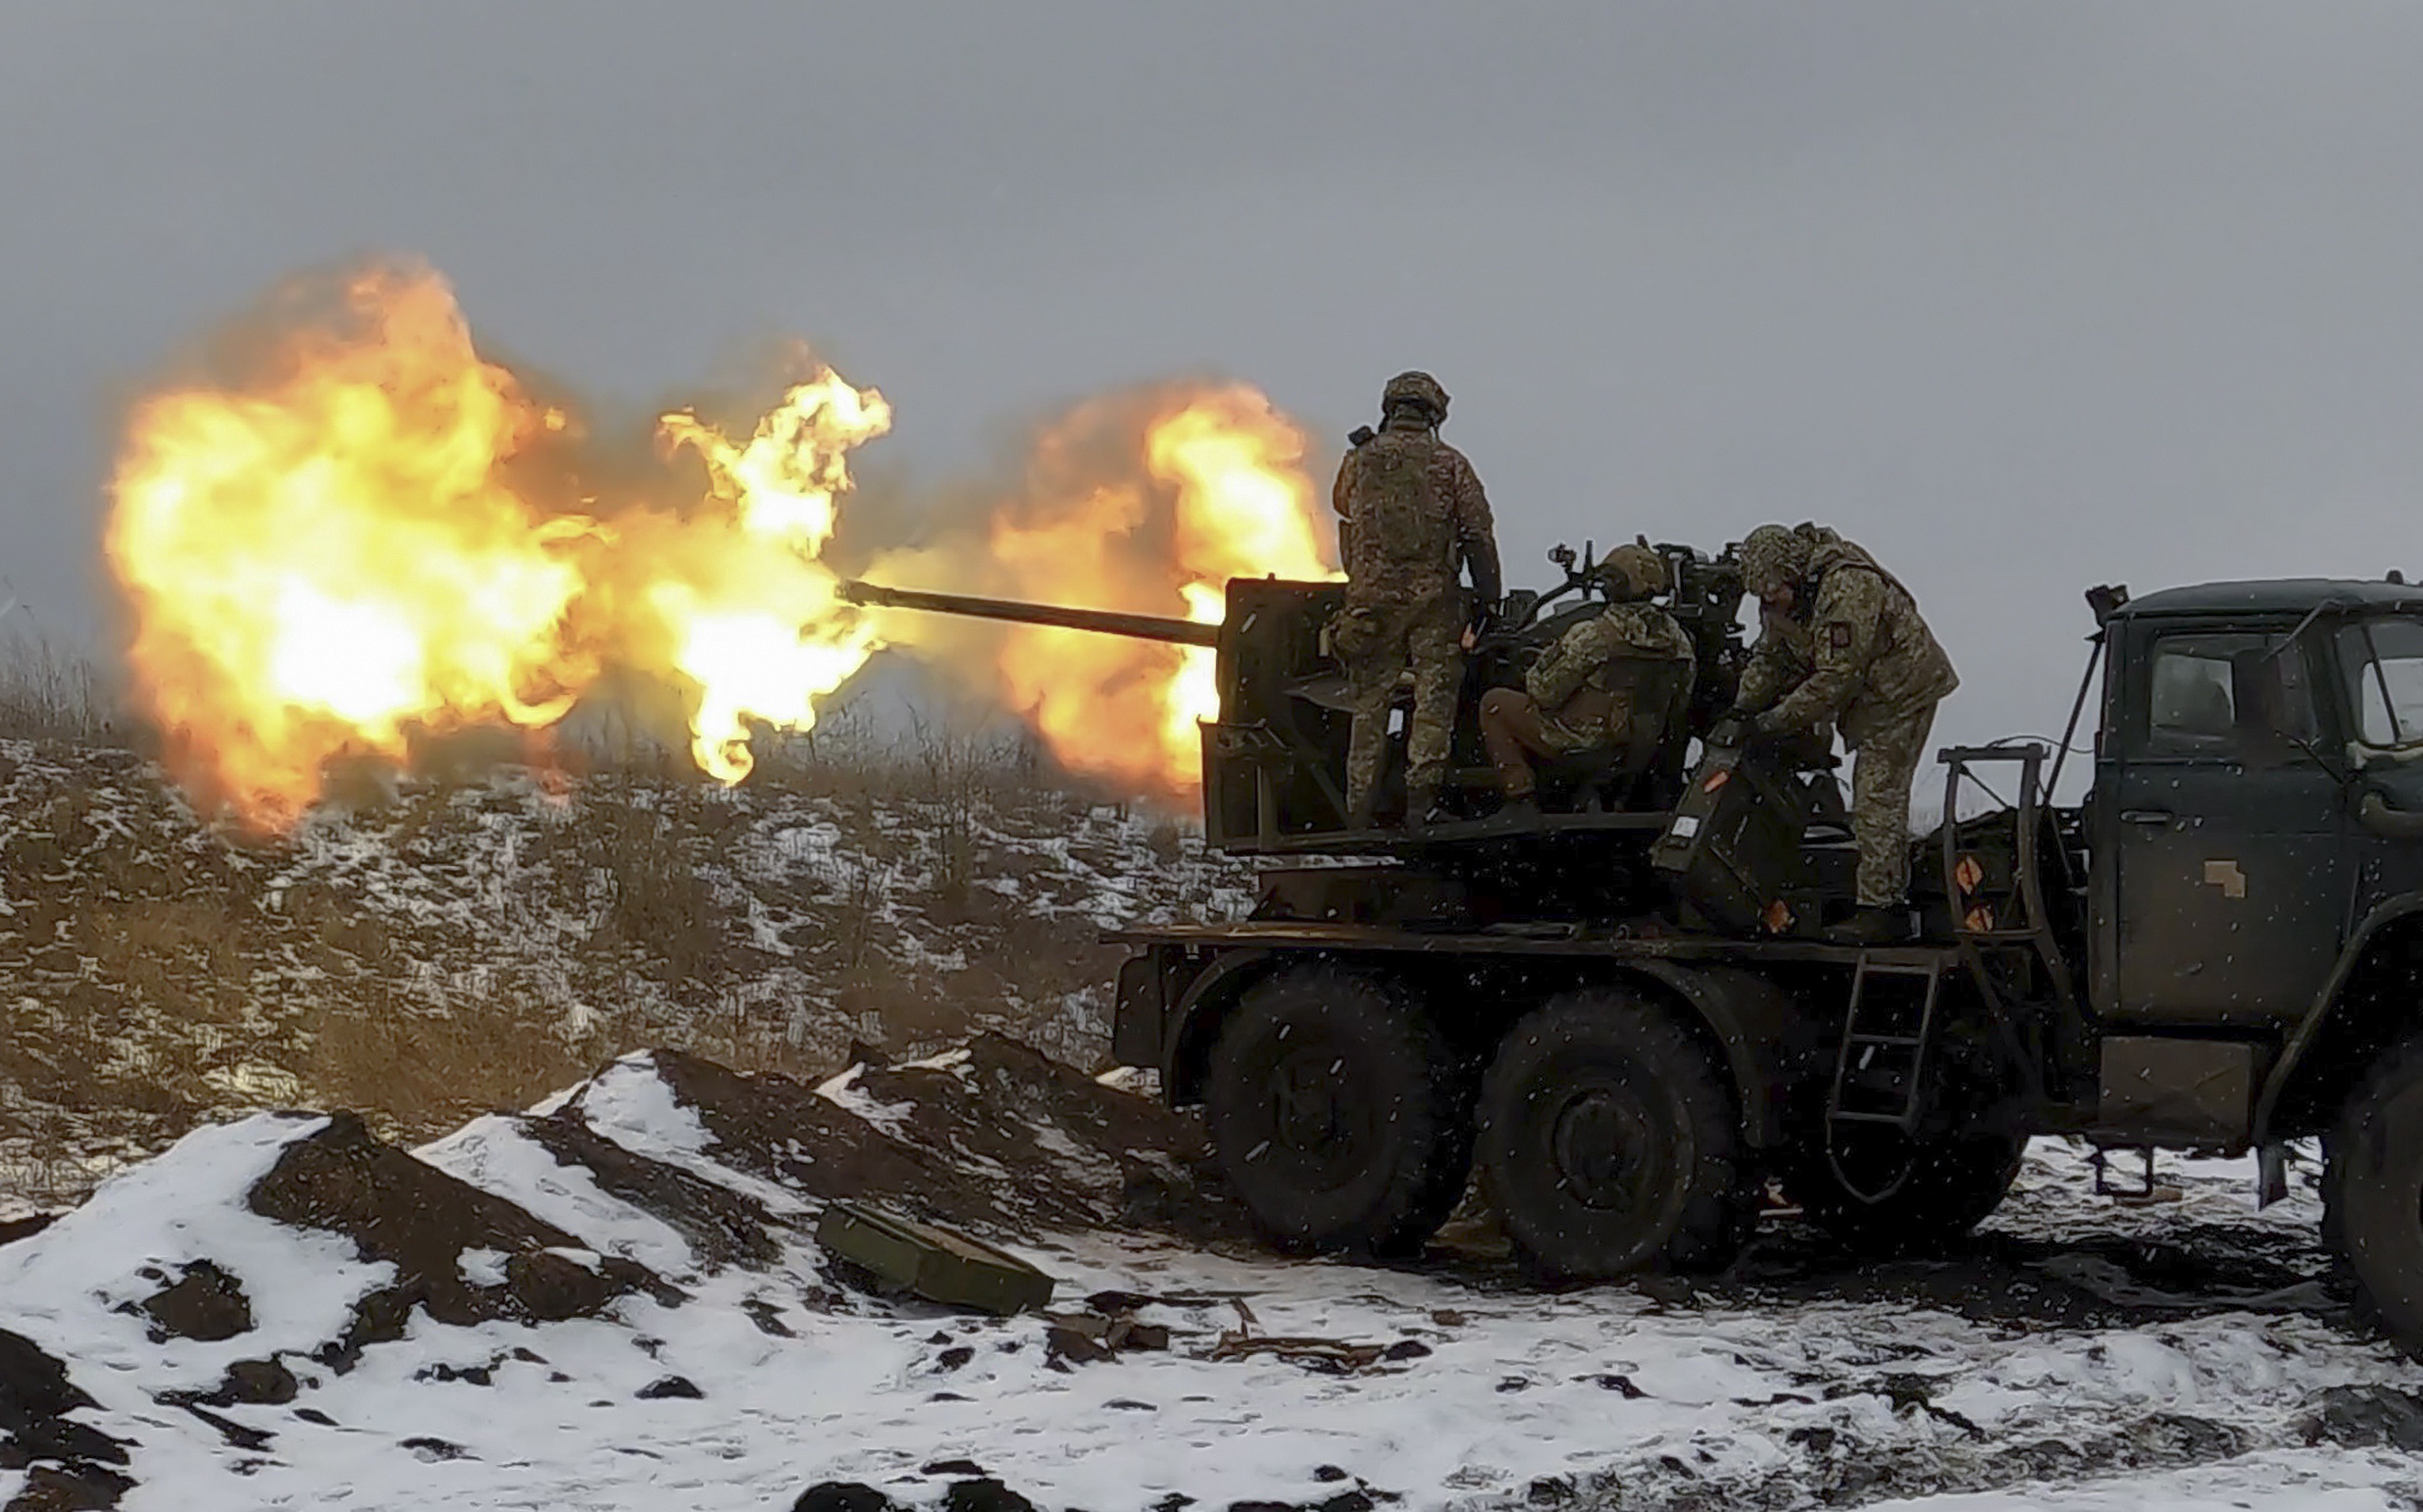 Oekraïense strijdkrachten vuren met zware artillerie in de omgeving van Bachmoet. 'Ik denk dat er iets groots op til is, het zal met name gaan om het noordwesten van de provincie Loehansk en het noordwesten van de provincie Donetsk, ten westen van Bachmoet.'